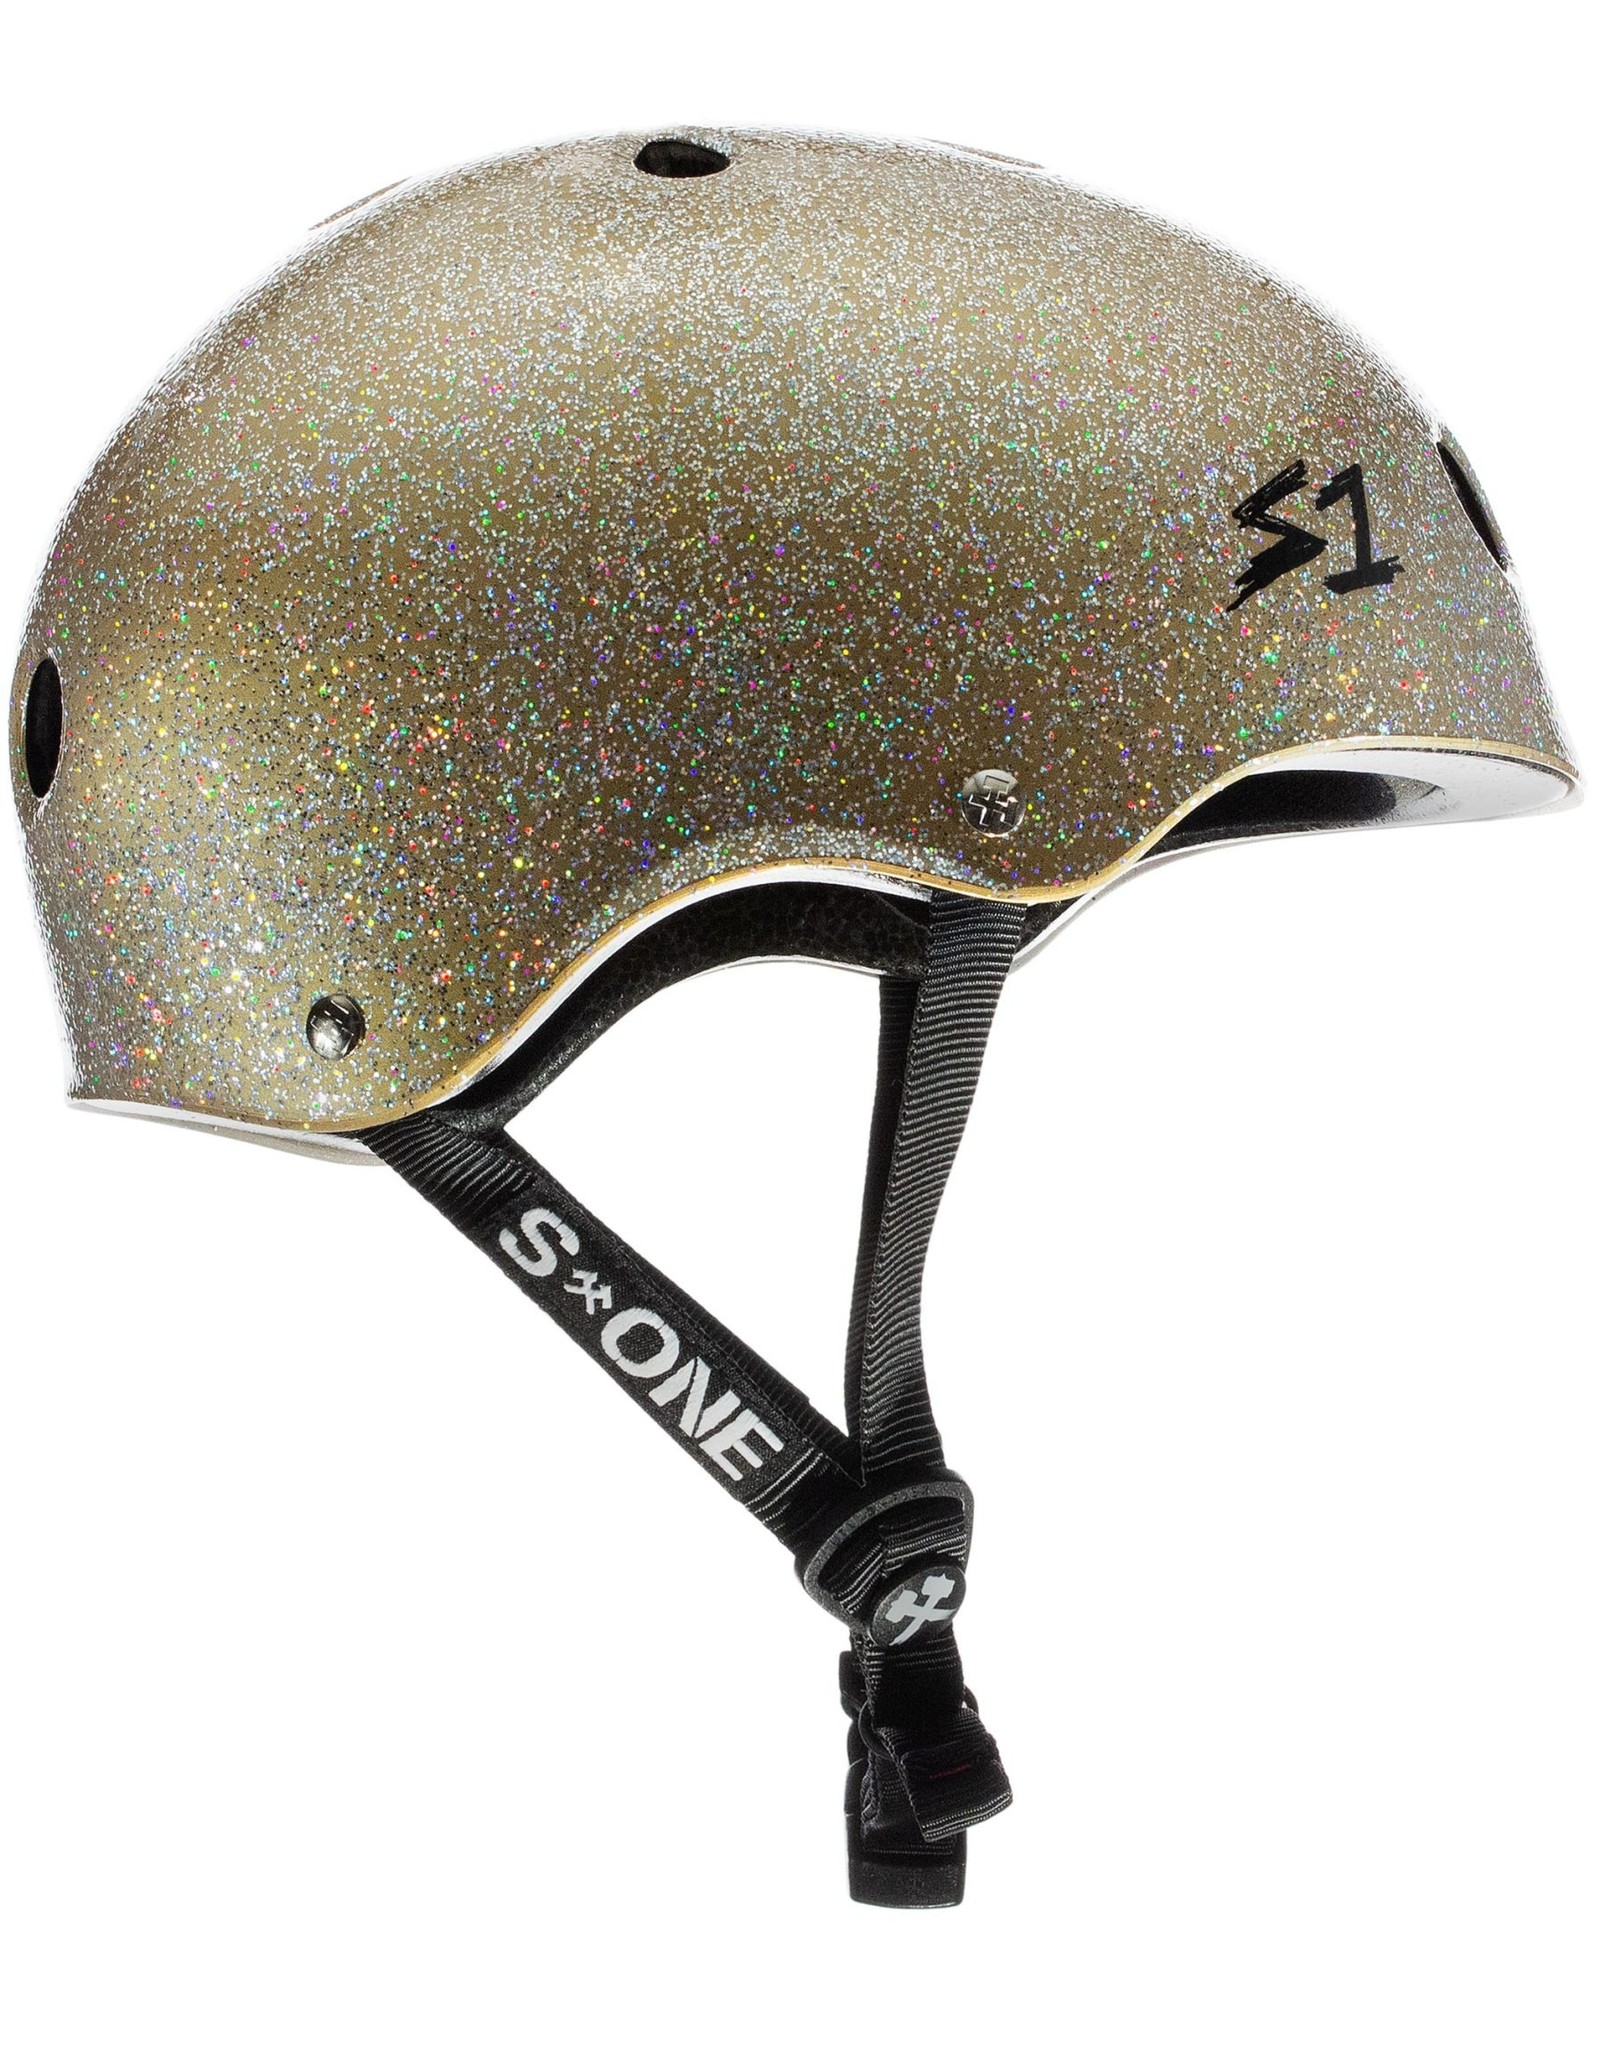 S-One S1 Lifer Helmet Glitter